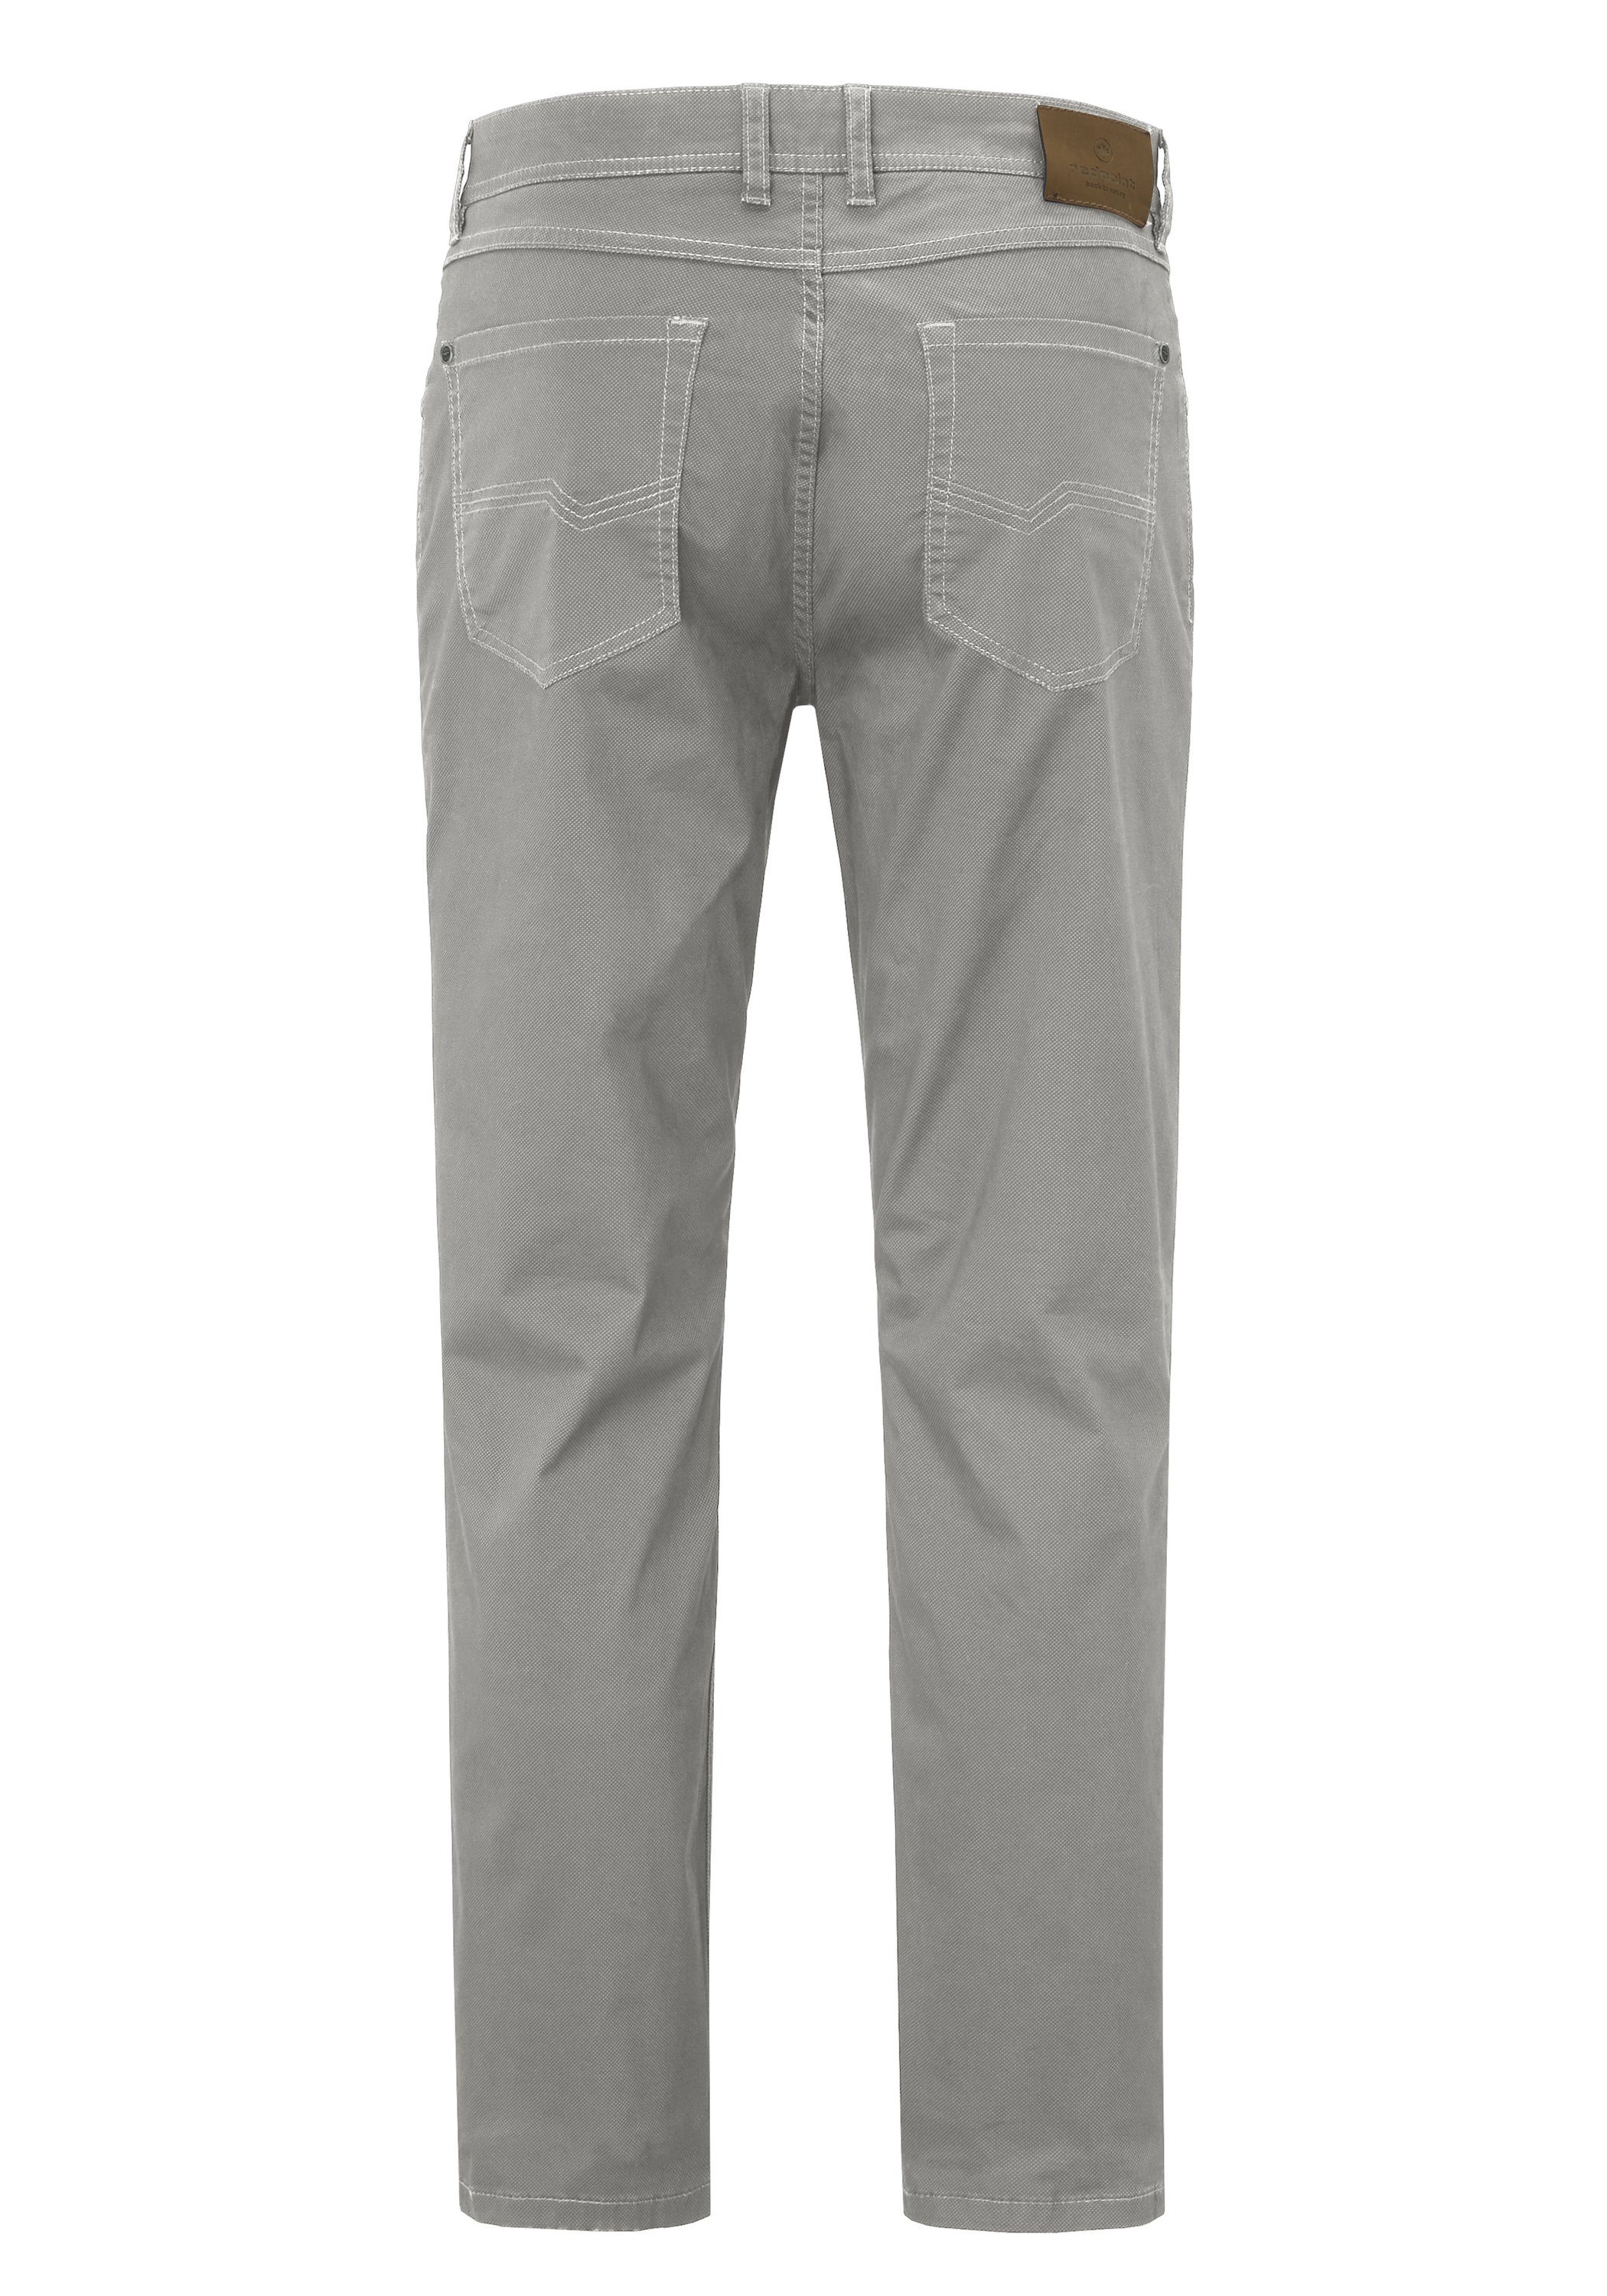 Redpoint Stoffhose MILTON super stretch Hose 5 Pocket grey